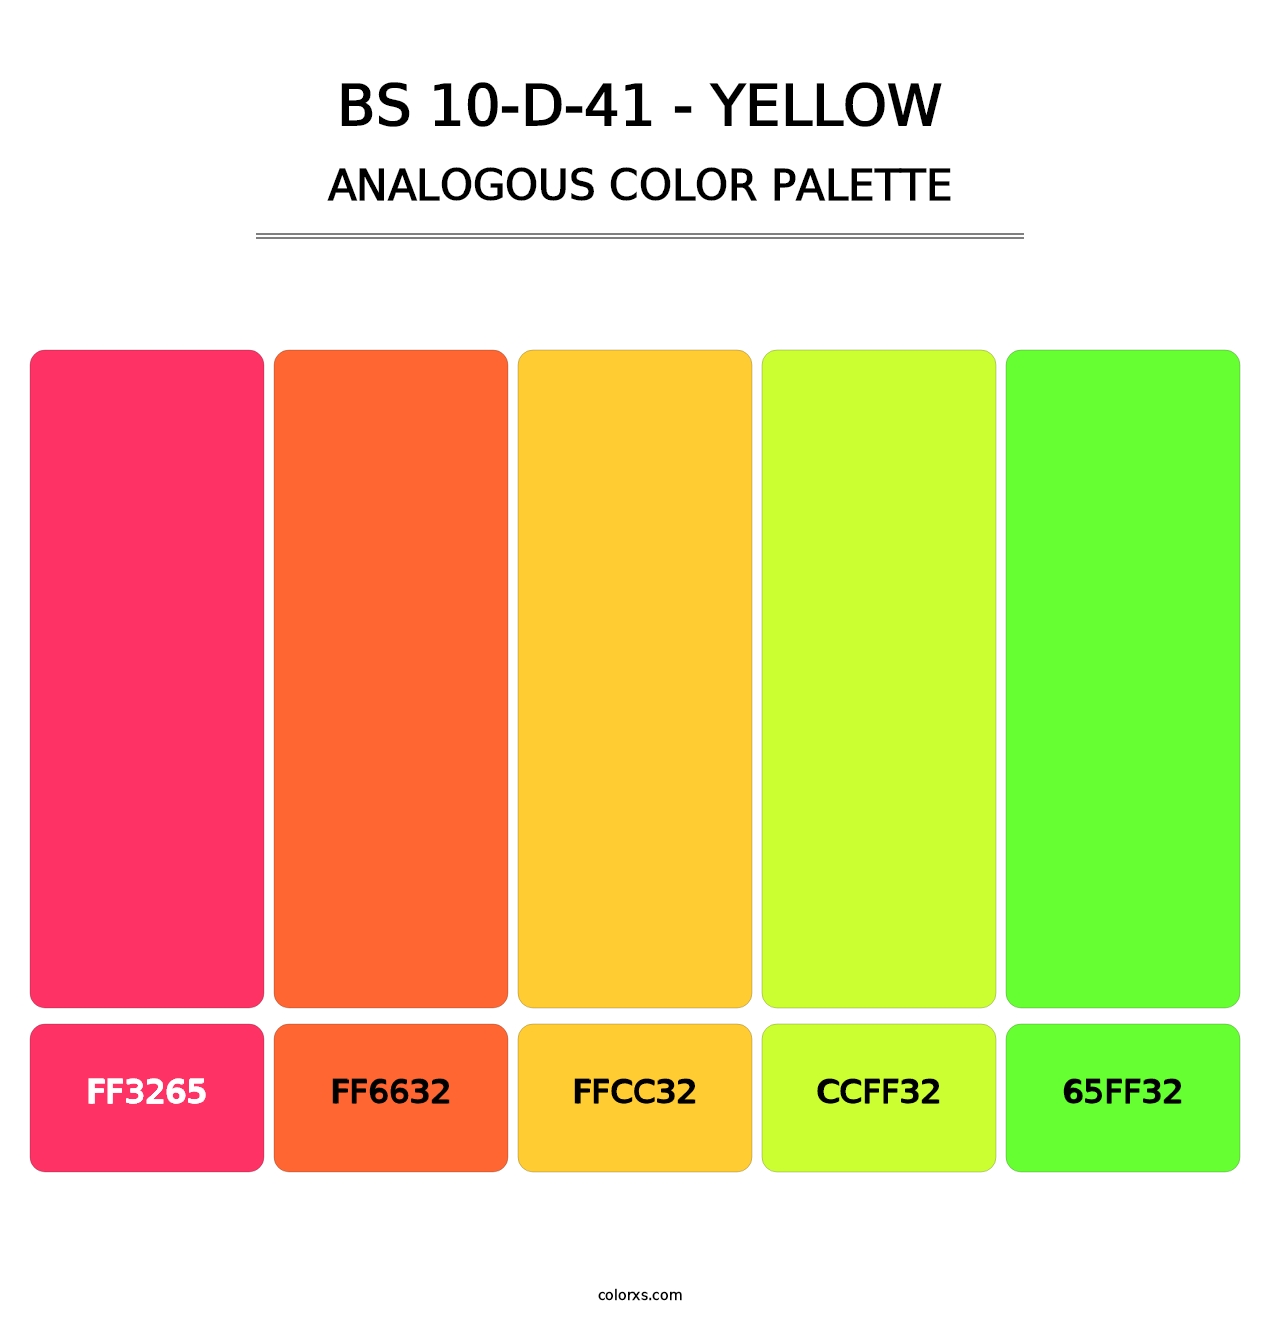 BS 10-D-41 - Yellow - Analogous Color Palette